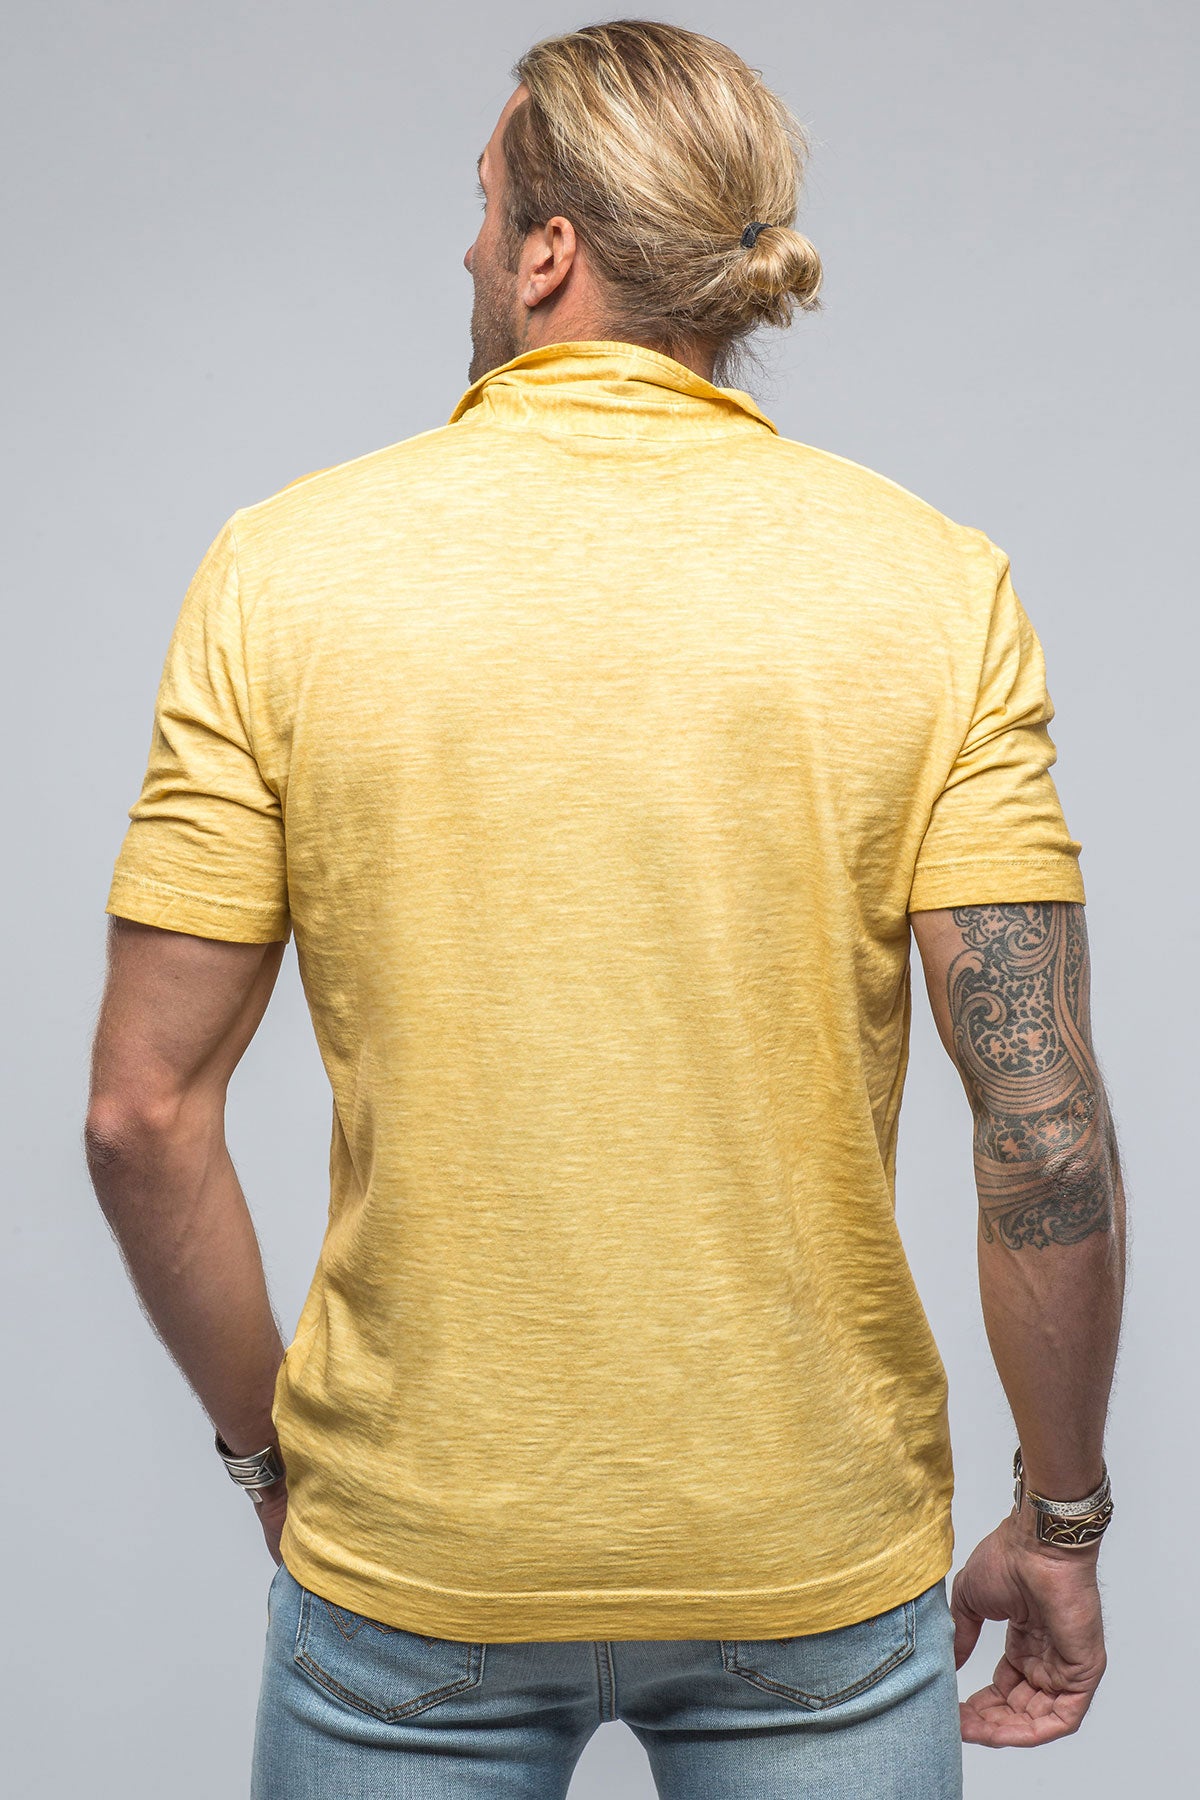 Soho Polo in Yellow | Mens - Shirts - Polos | Gimo's Cotton